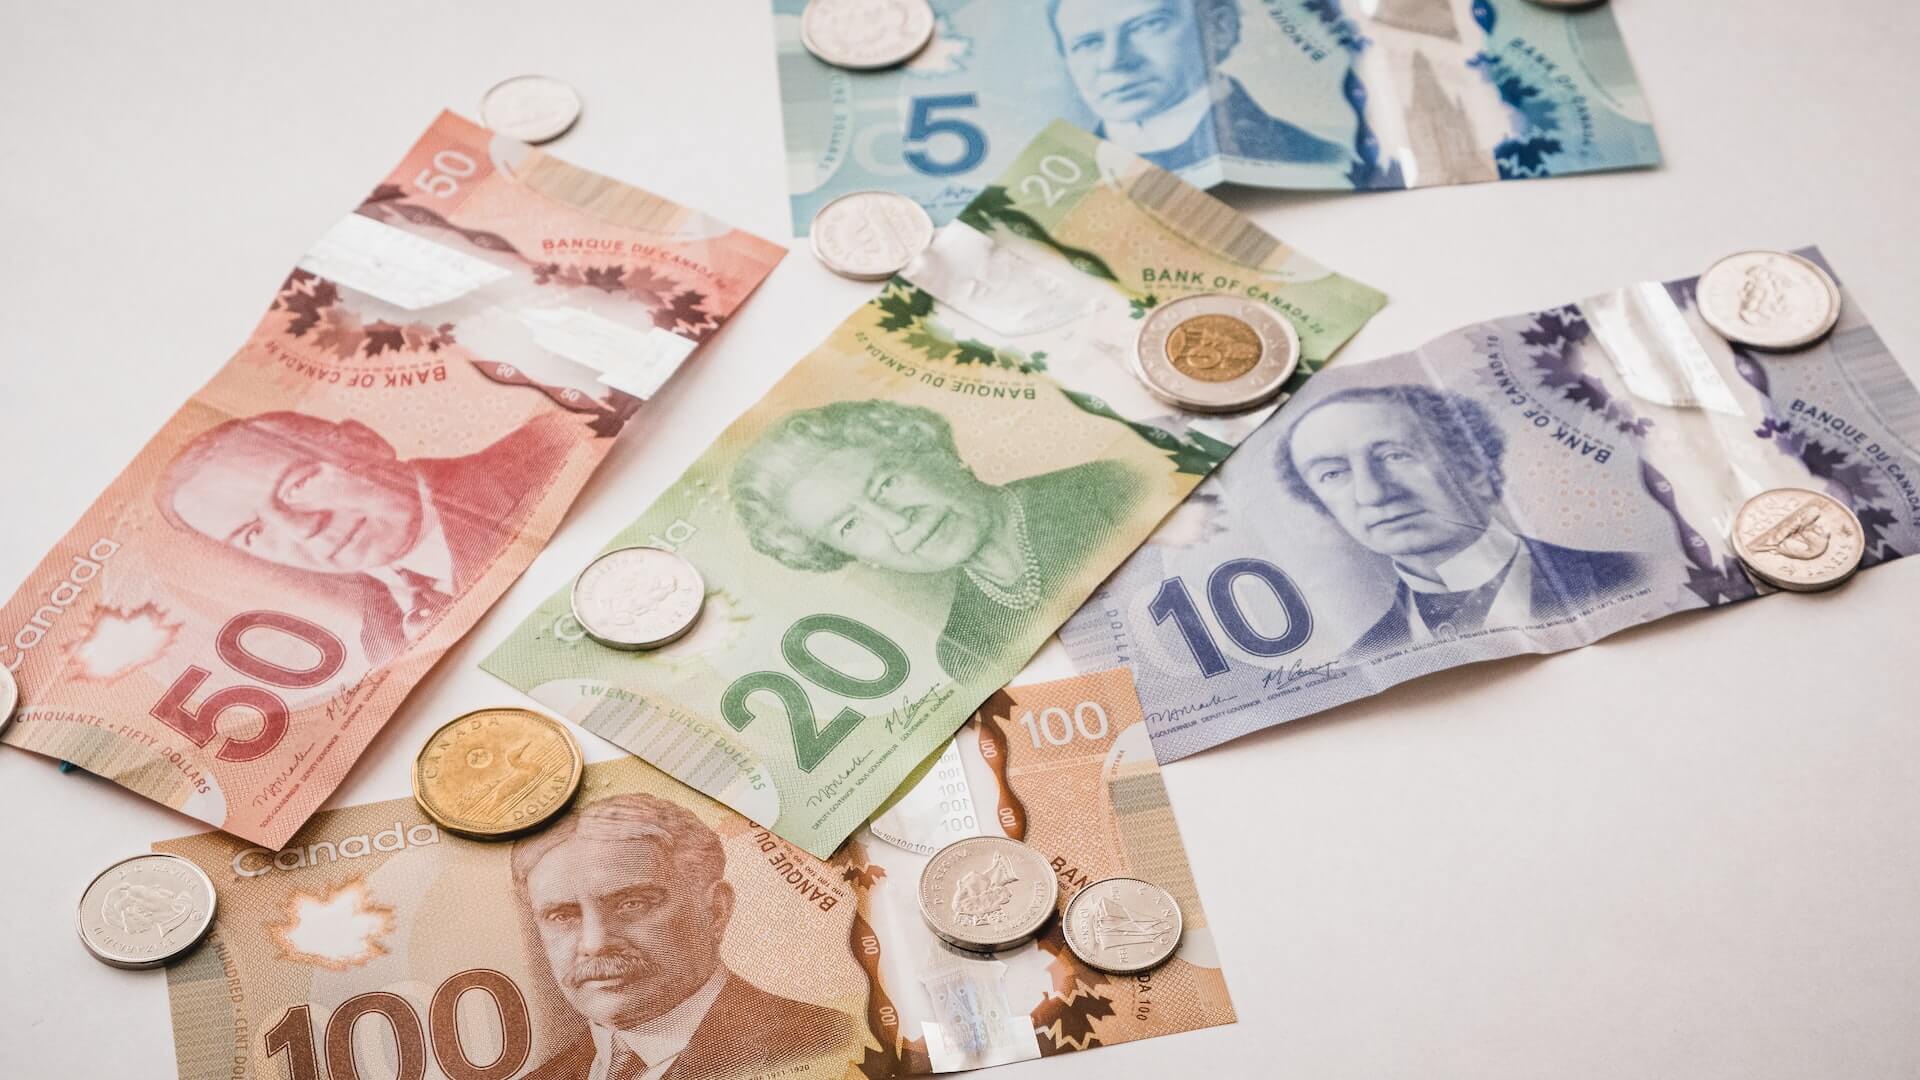 Get a cash advance in Canada